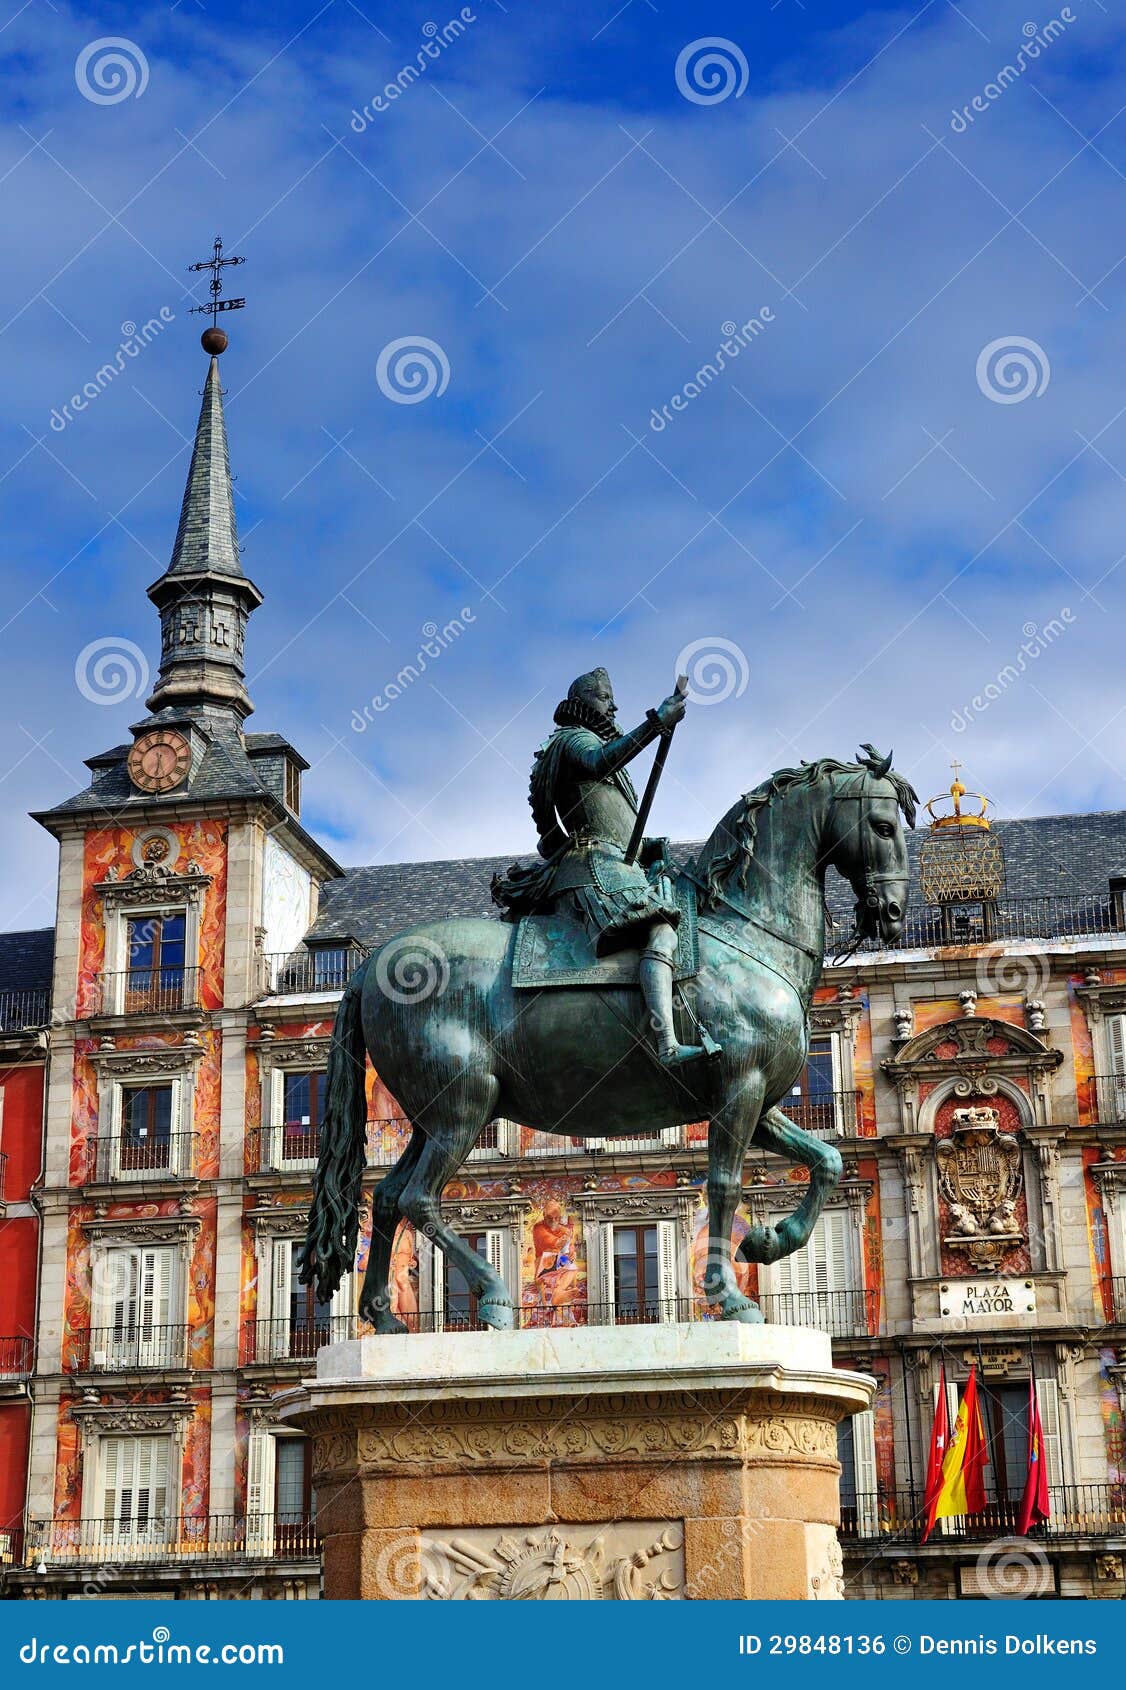 statue on plaza mayor, madrid, spain